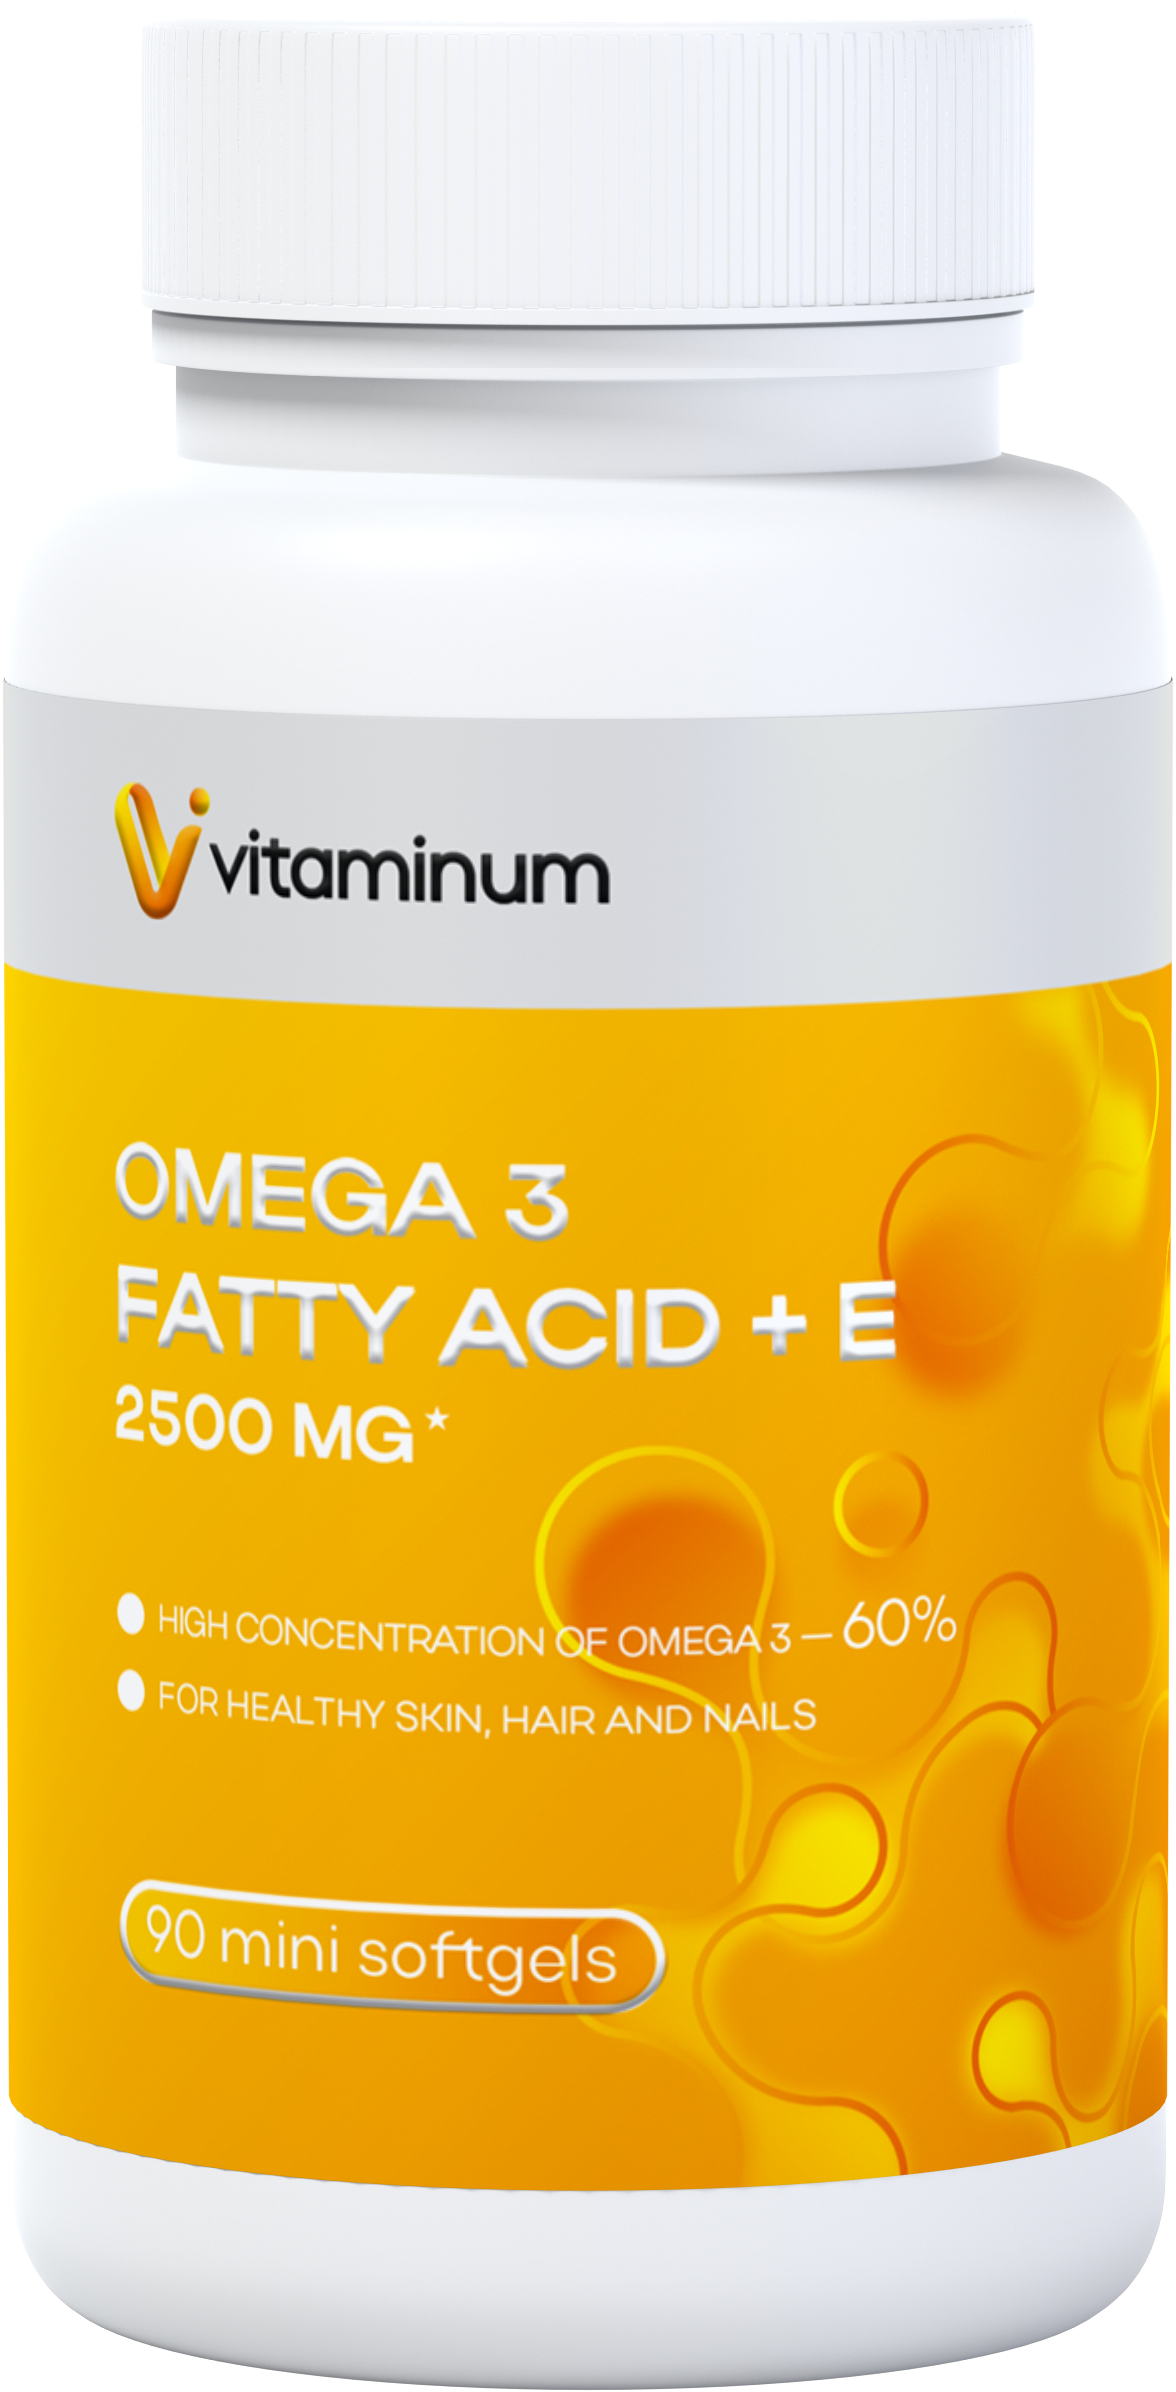  Vitaminum ОМЕГА 3 60% + витамин Е (2500 MG*) 90 капсул 700 мг   в Лагани